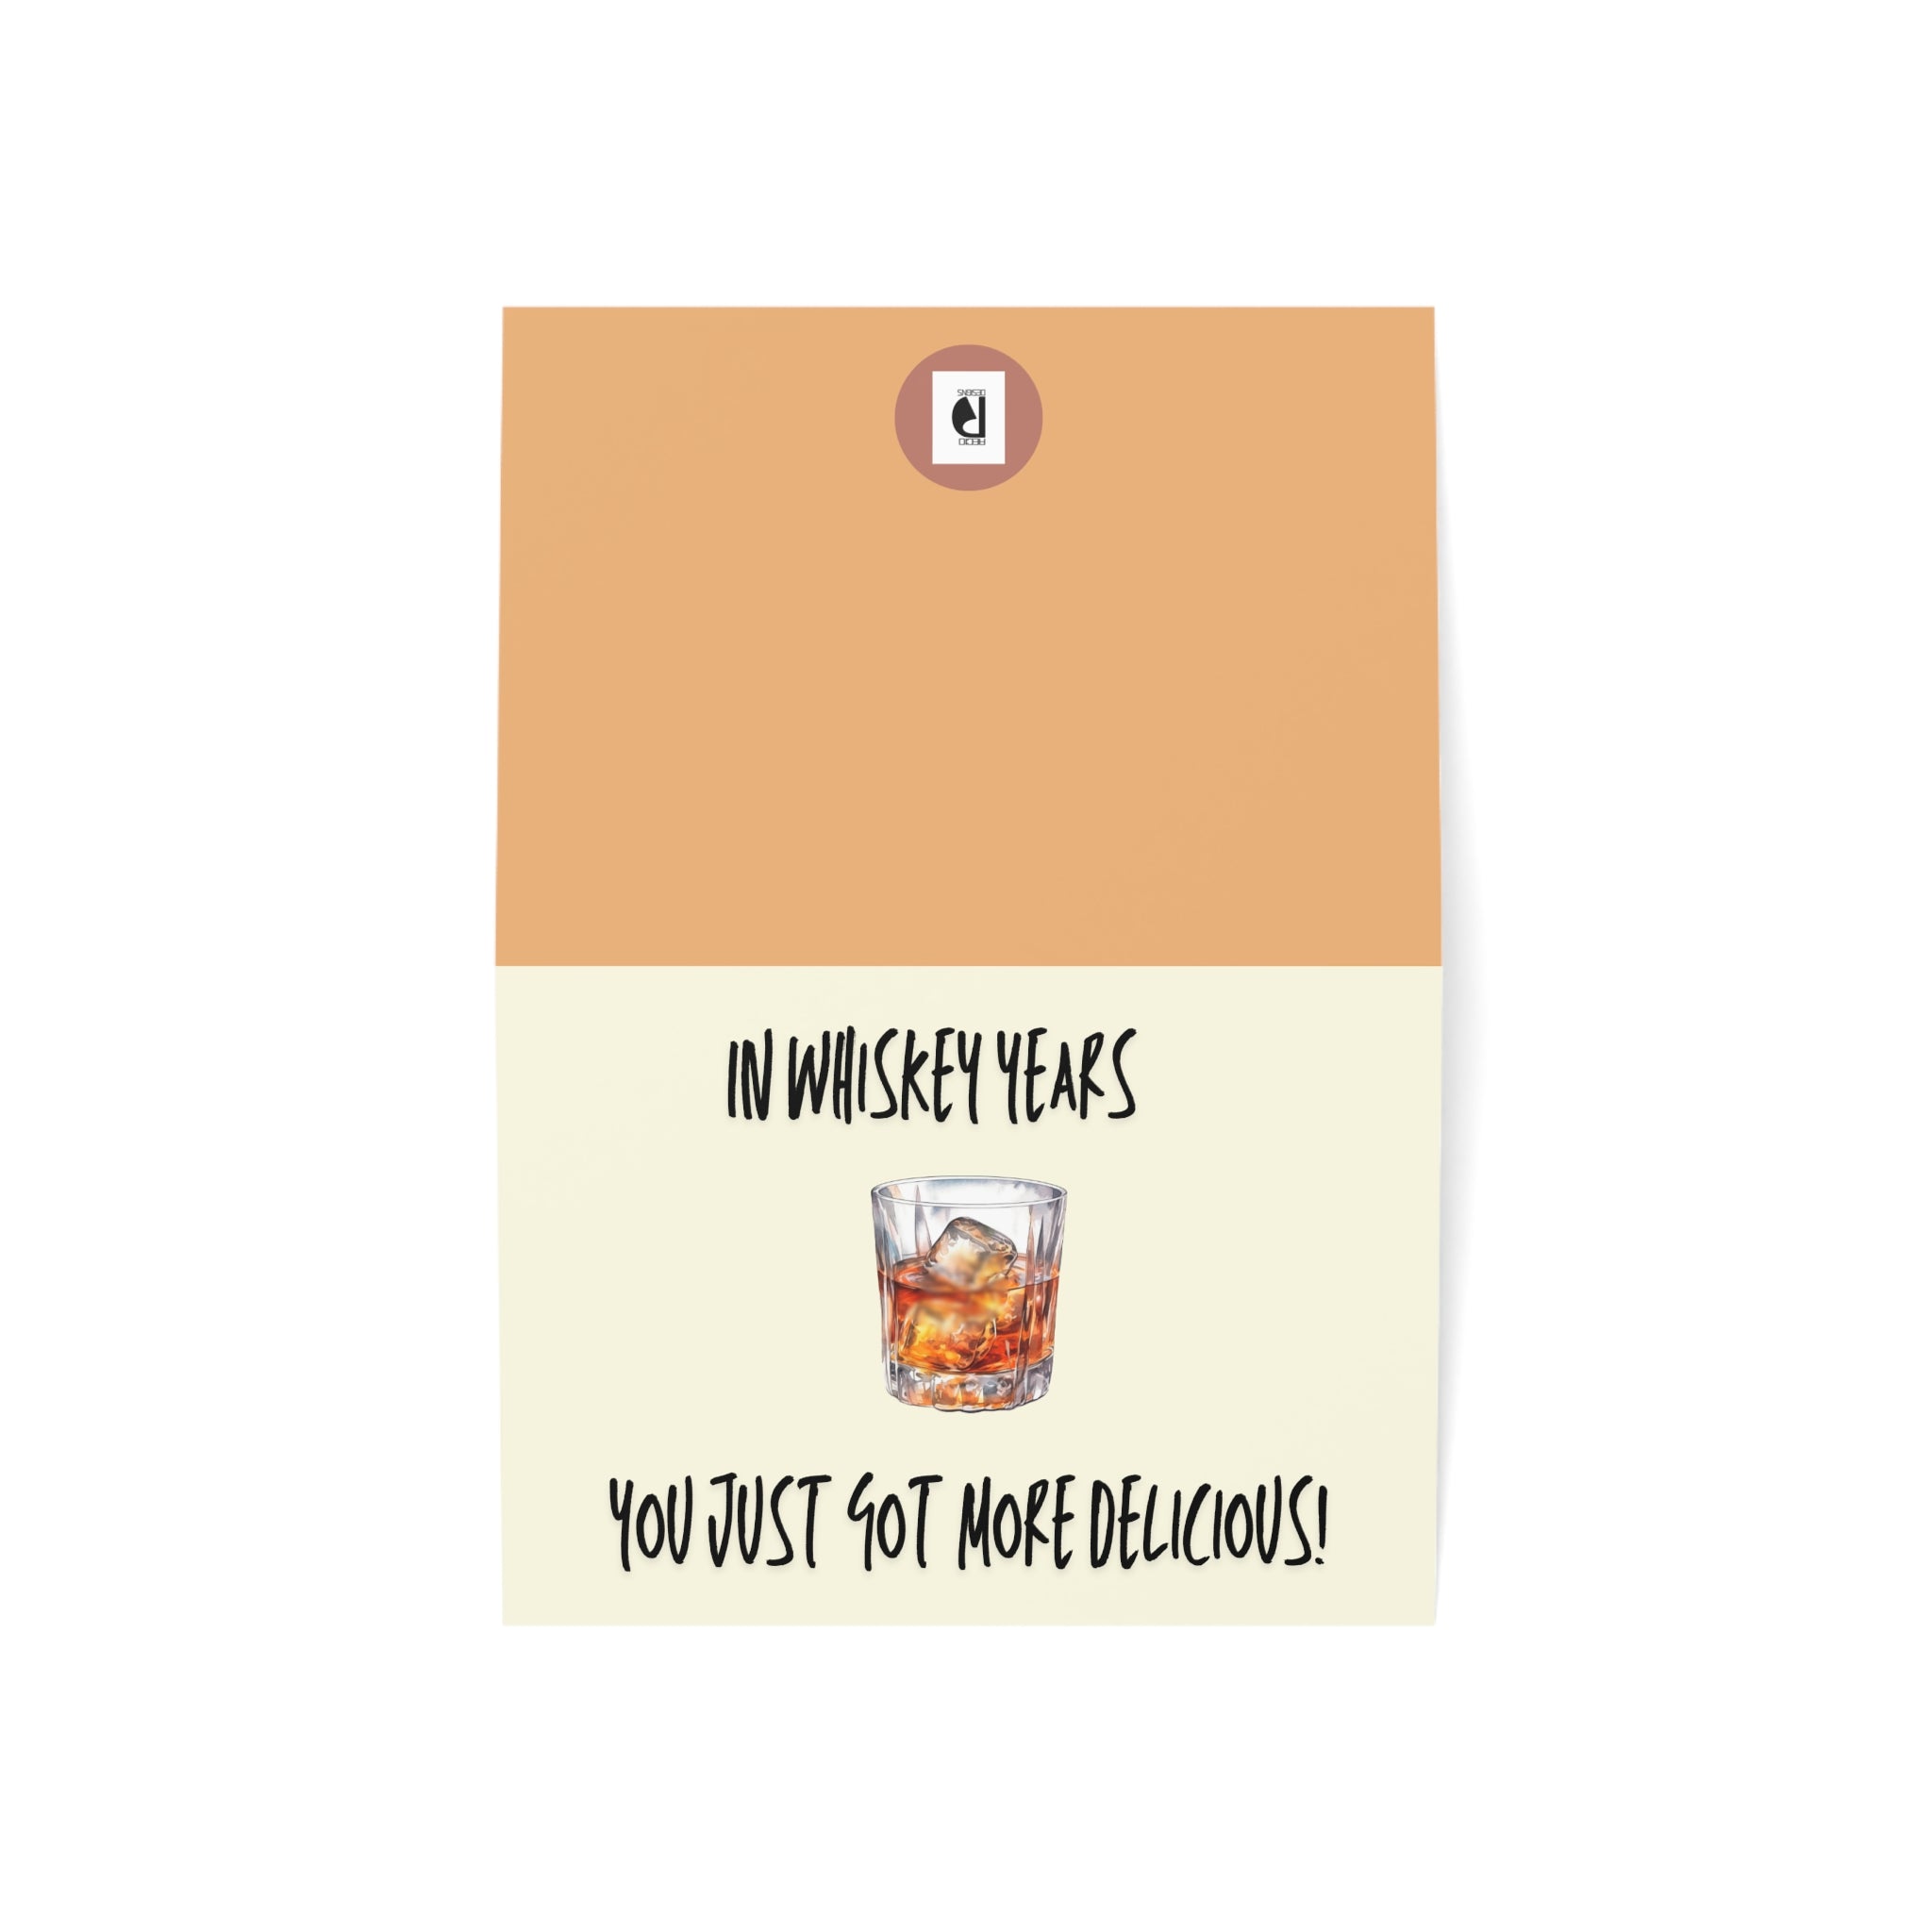 Whiskey Birthday Card